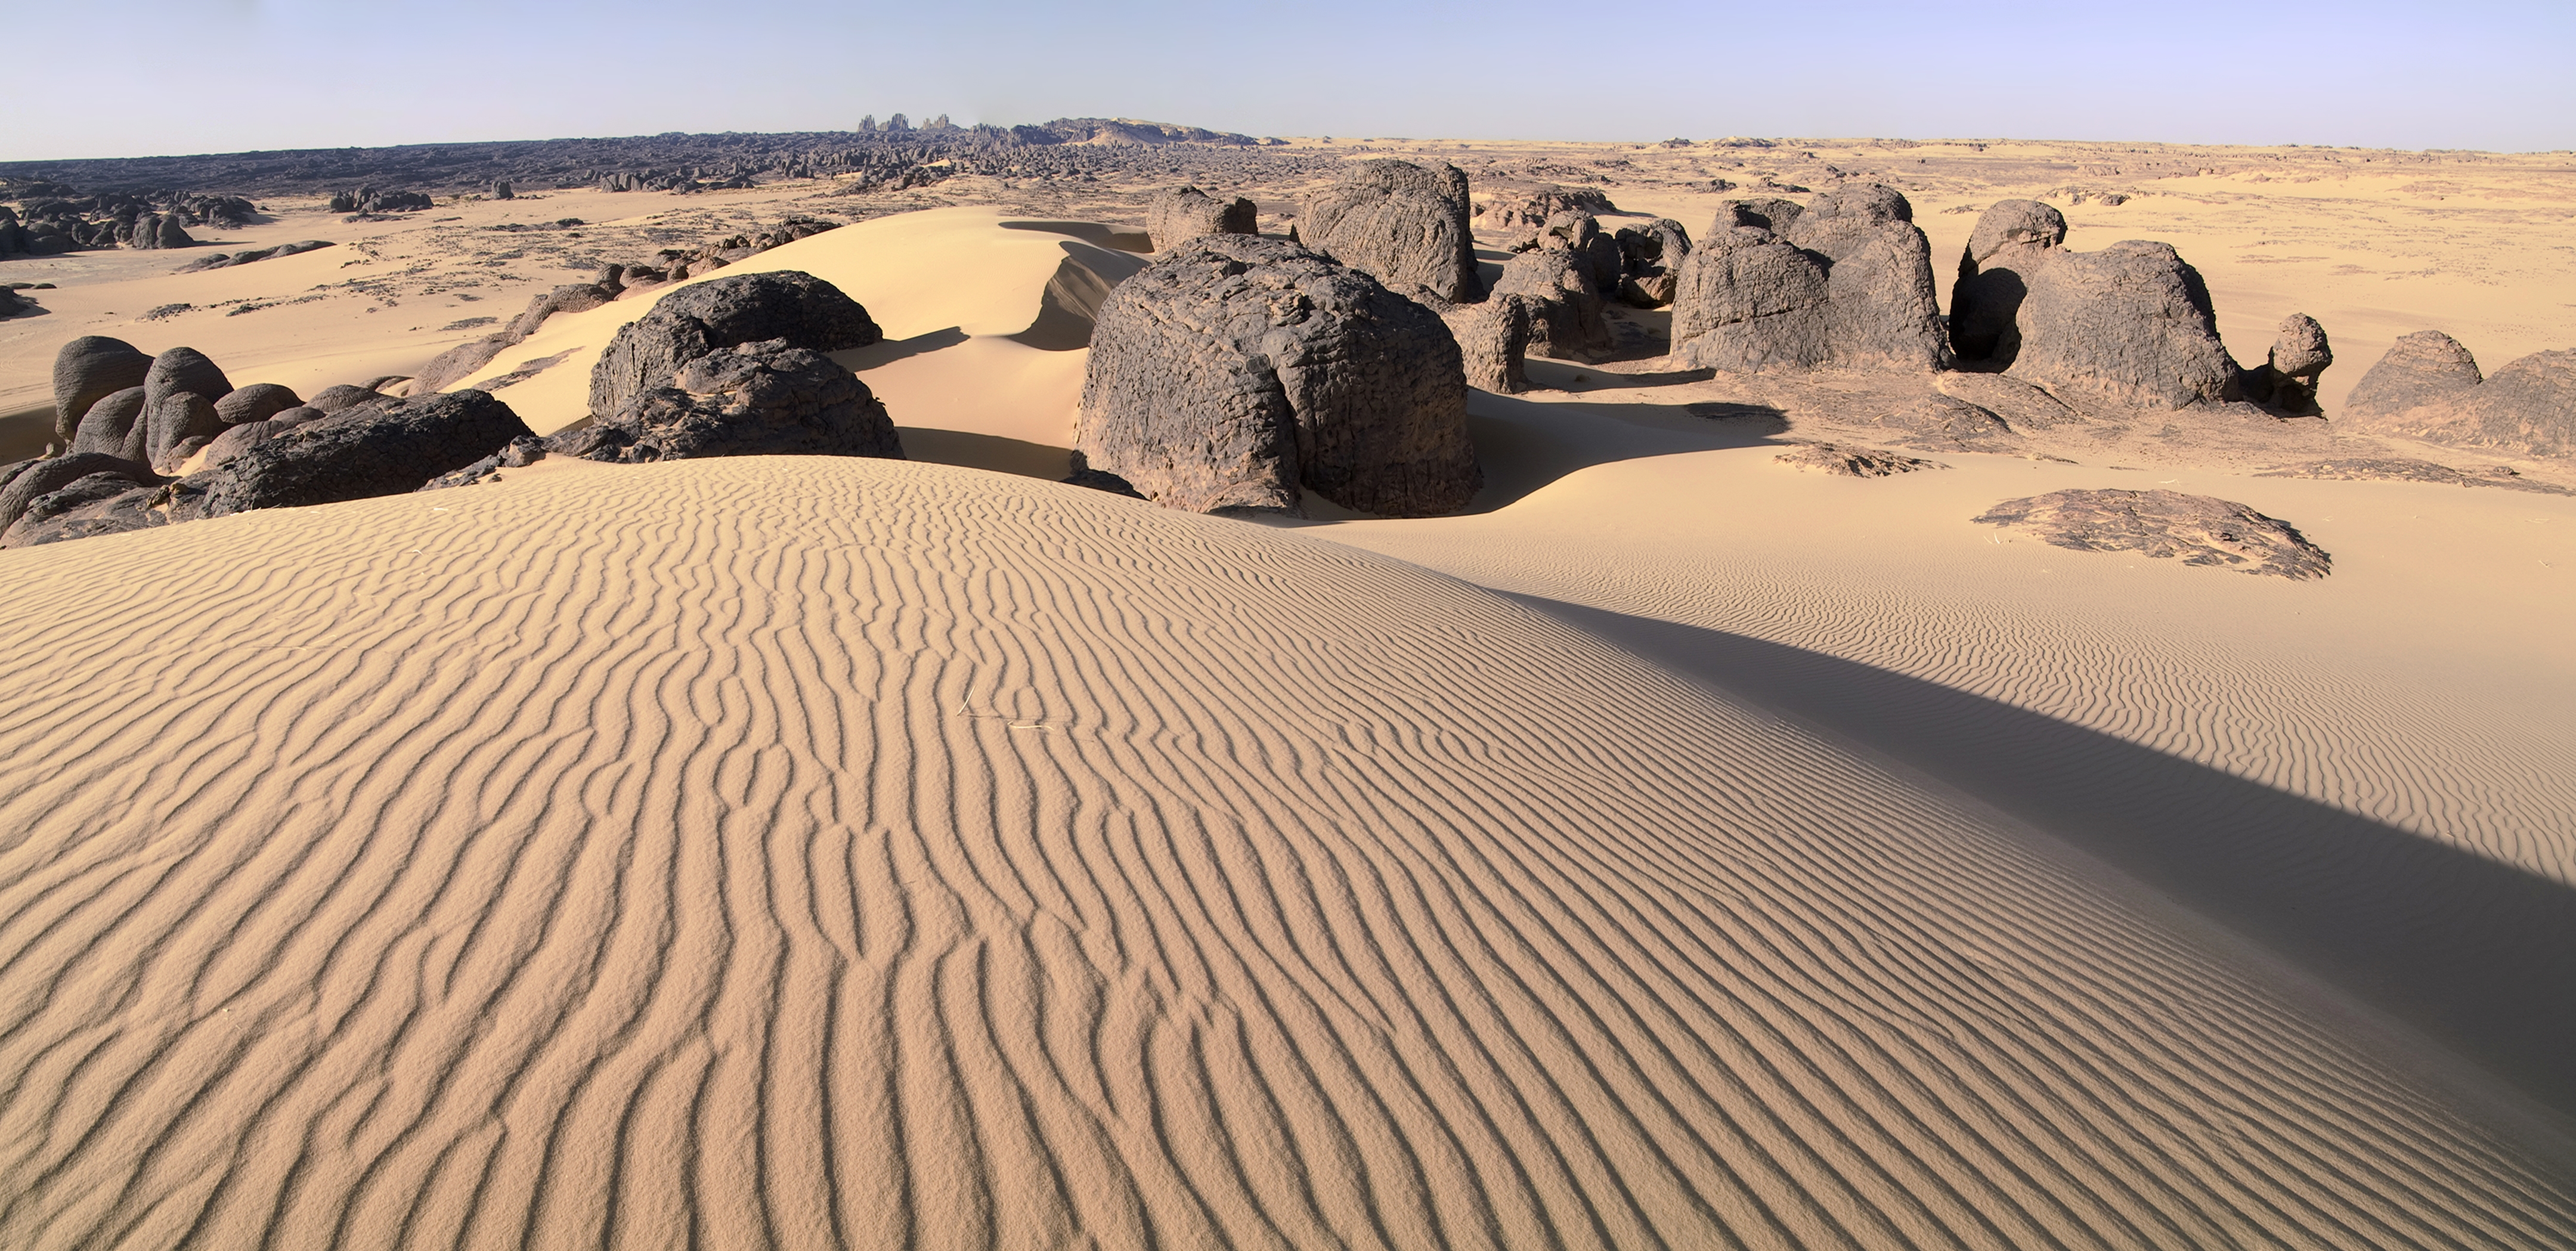 Africa Algeria Desert Dune Rock Sand Tassili N 039 Ajjer 4320x2098